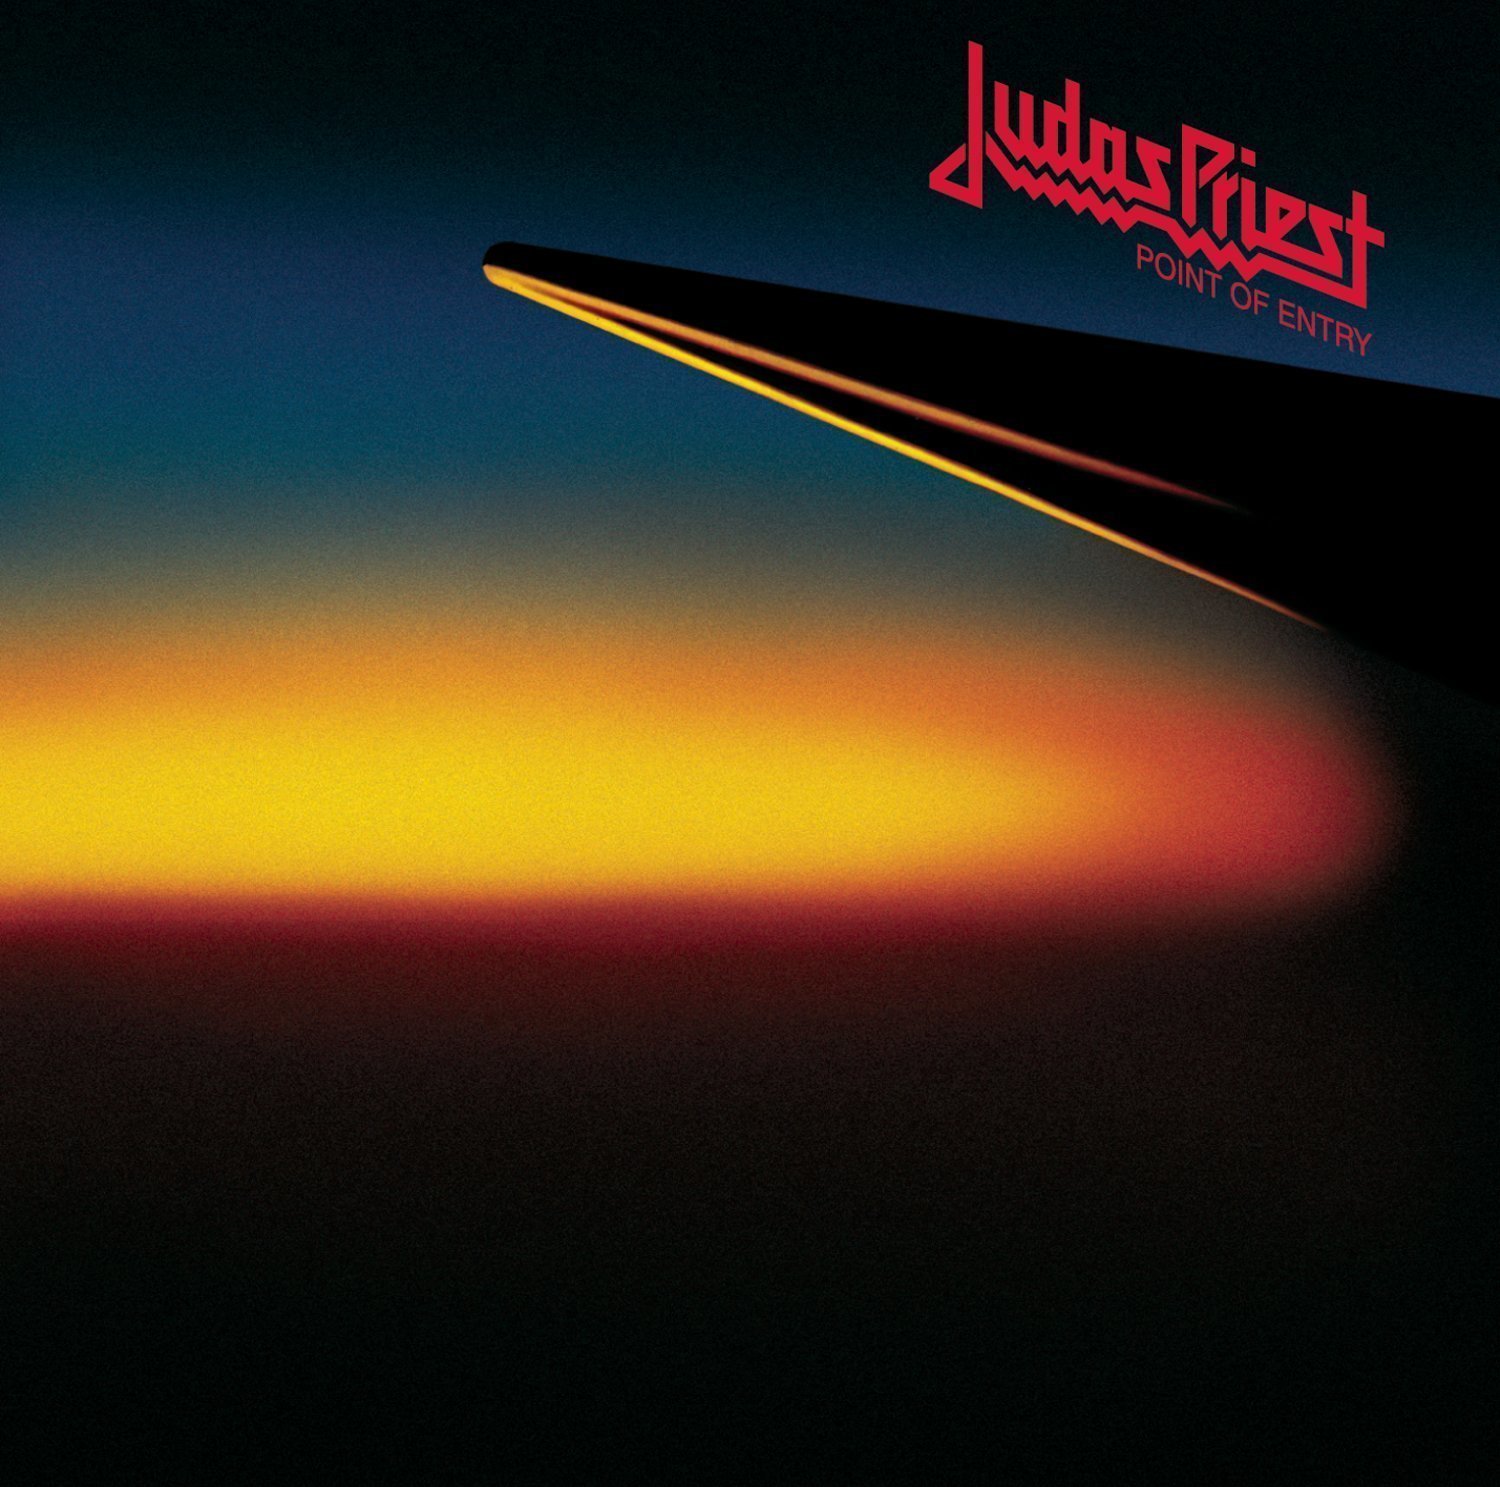 Judas Priest Point of Entry (LP) Judas Priest